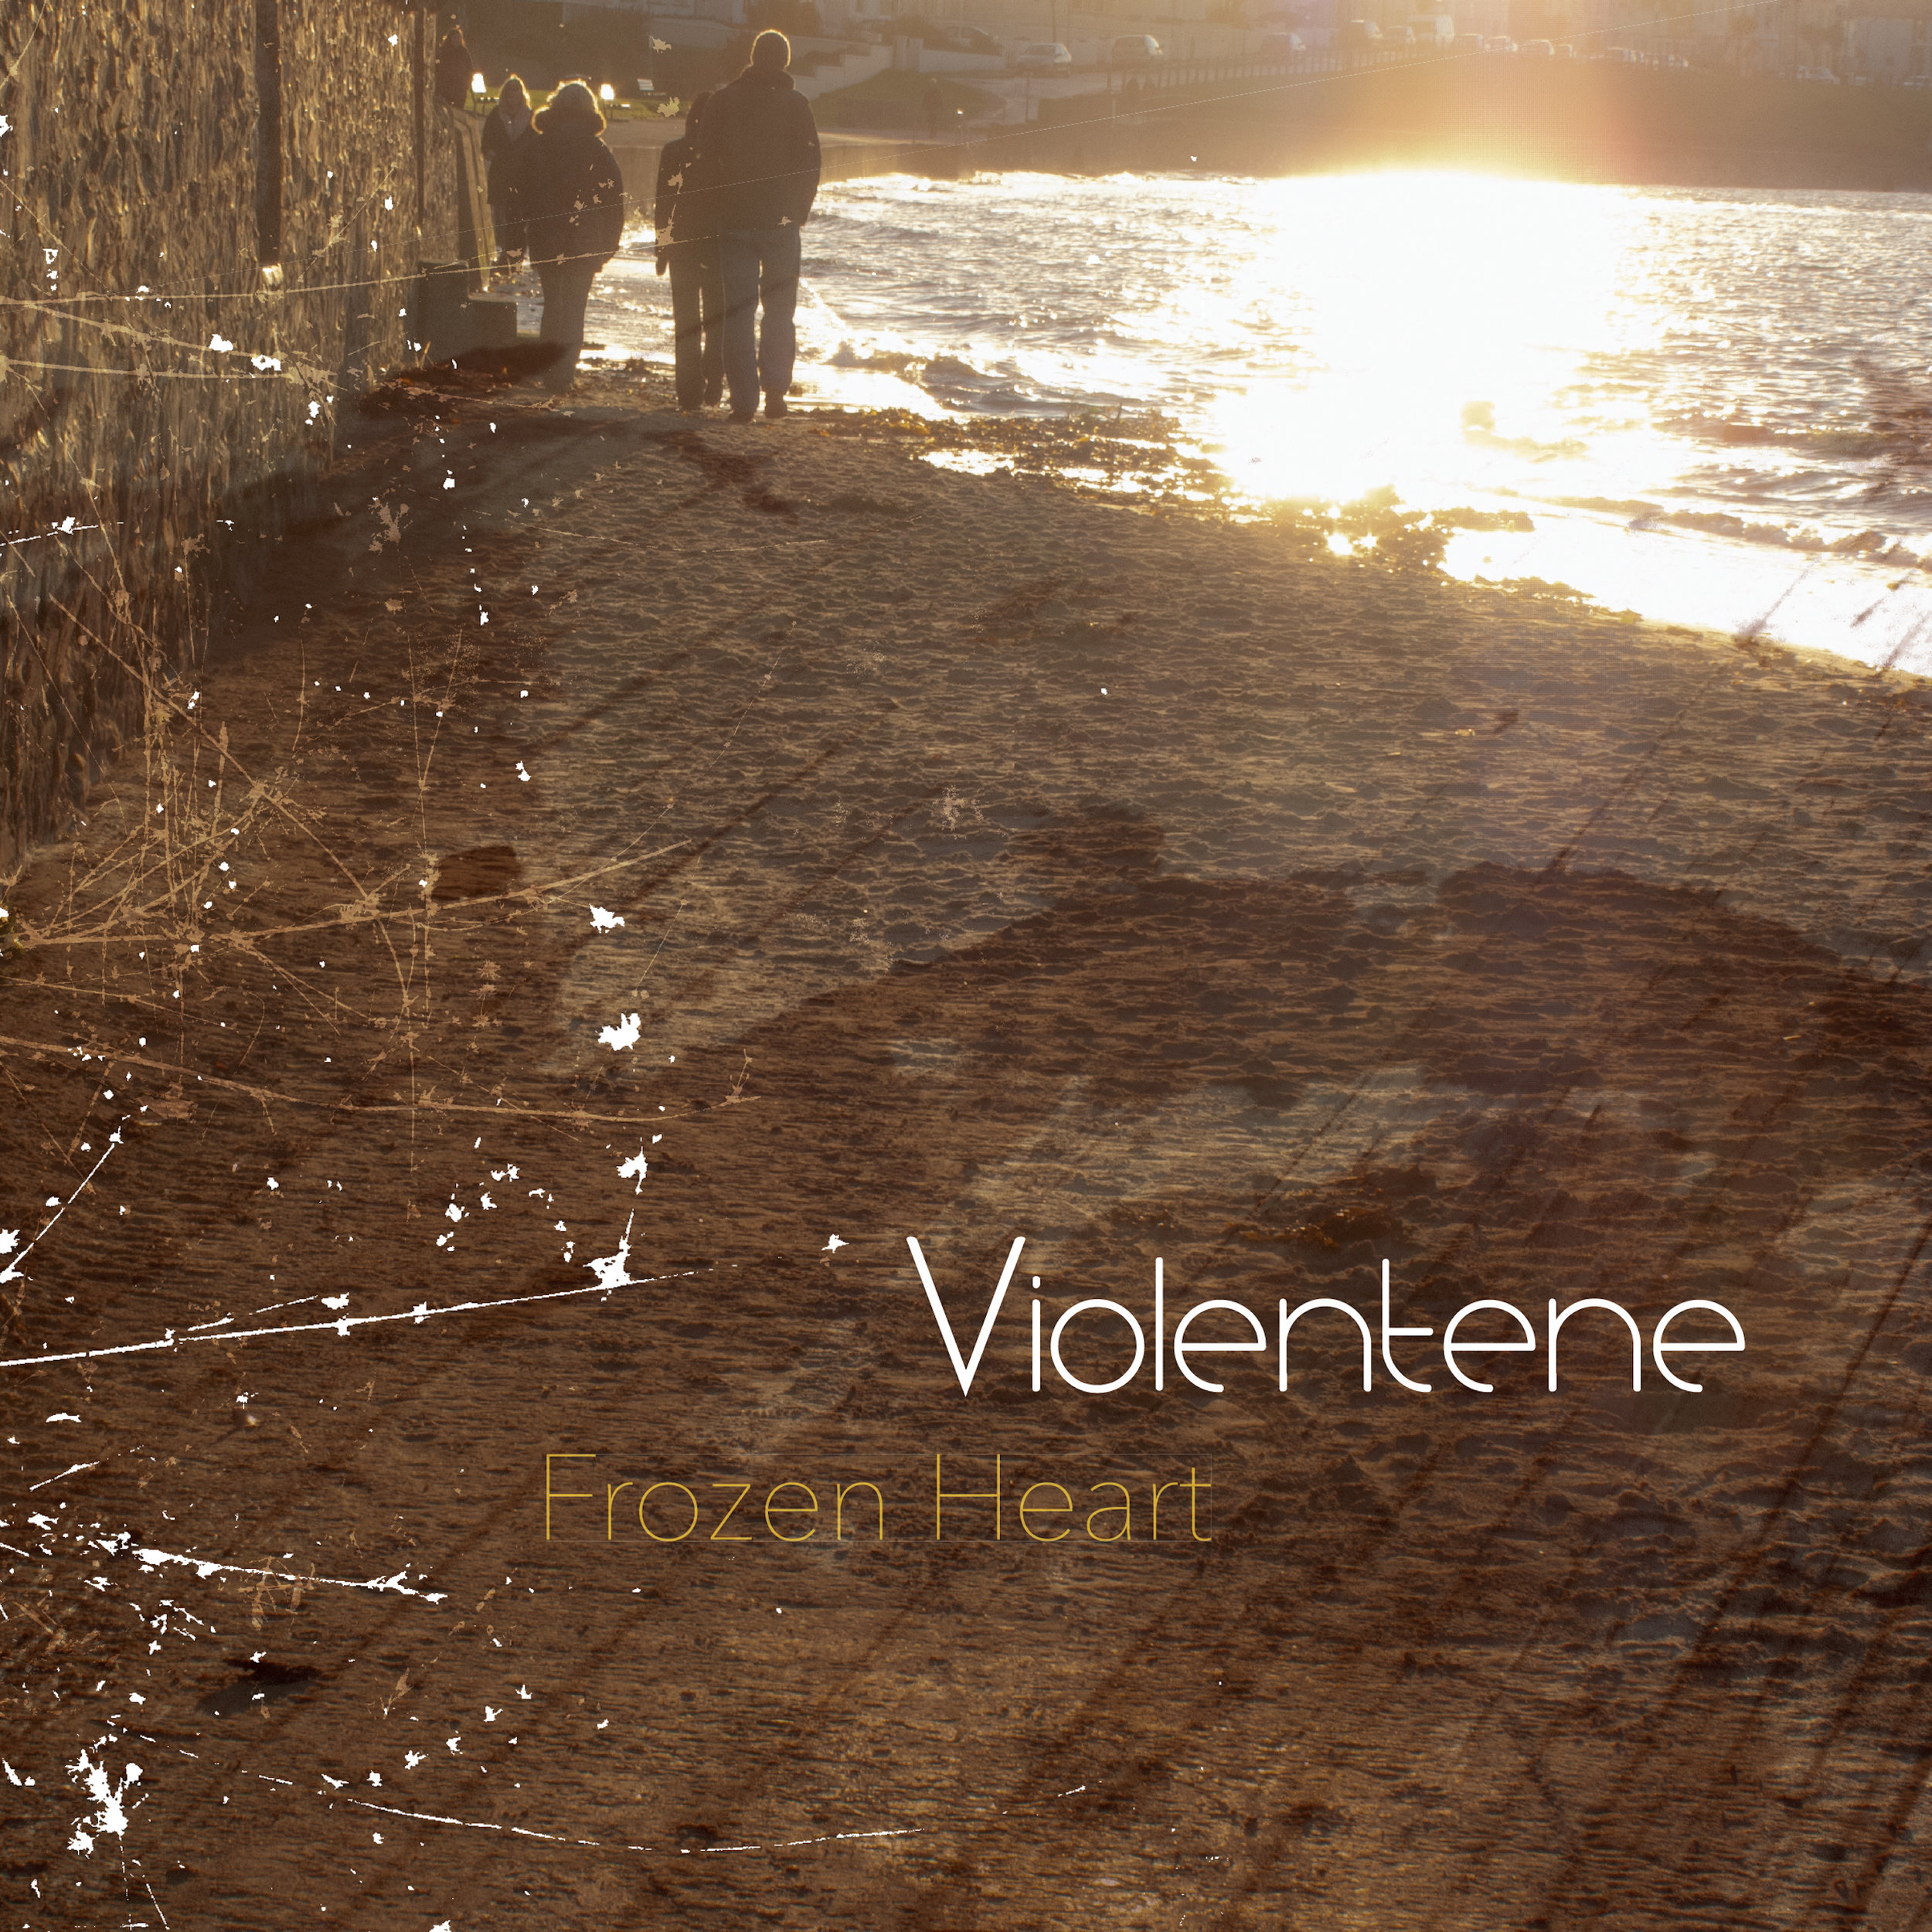 Violentene - Frozen Heart Cover.jpg